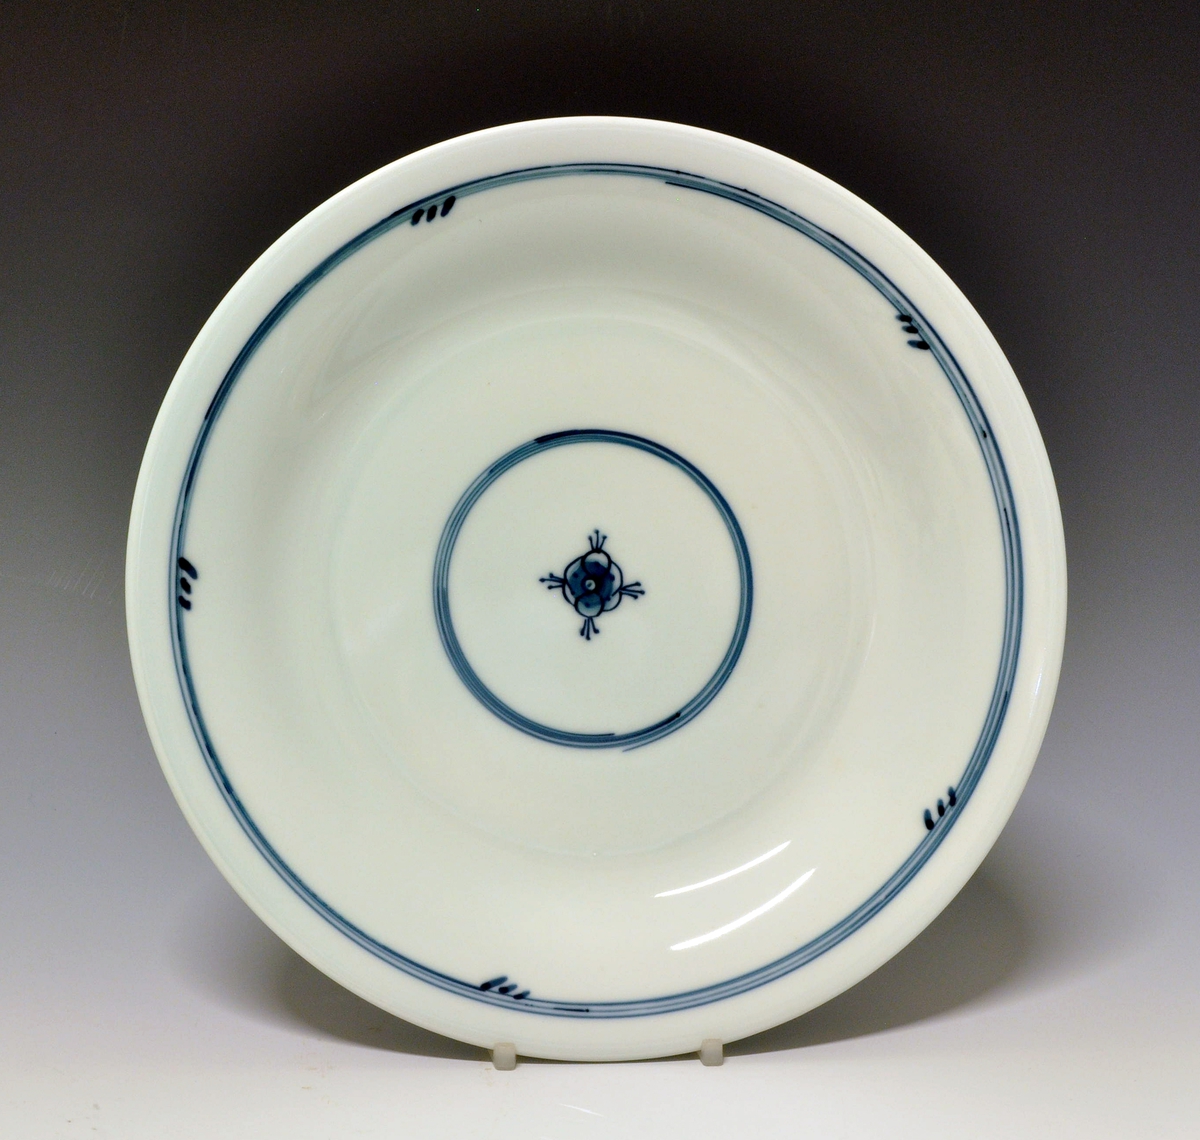 Flat tallerken i porselen, med glatt kant.
Dekor: Stråmønsterinspirert dekor av Jens von der Lippe
Modell: 2590, Leif Enger